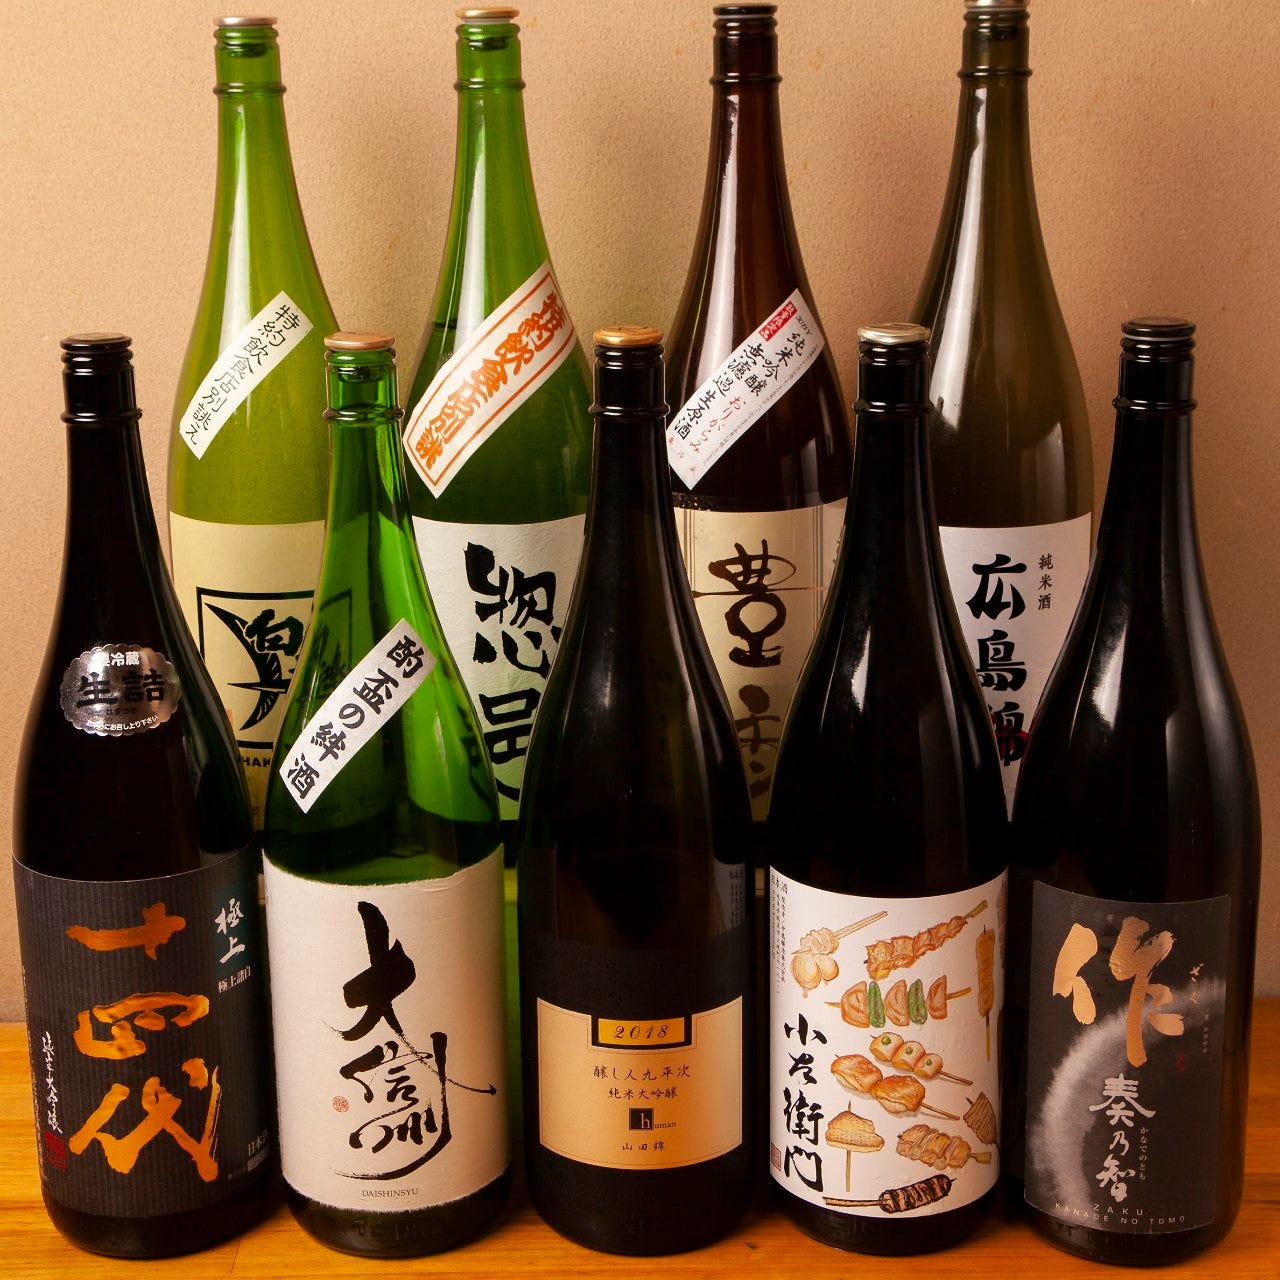 ◆選りすぐりの日本酒を味わう